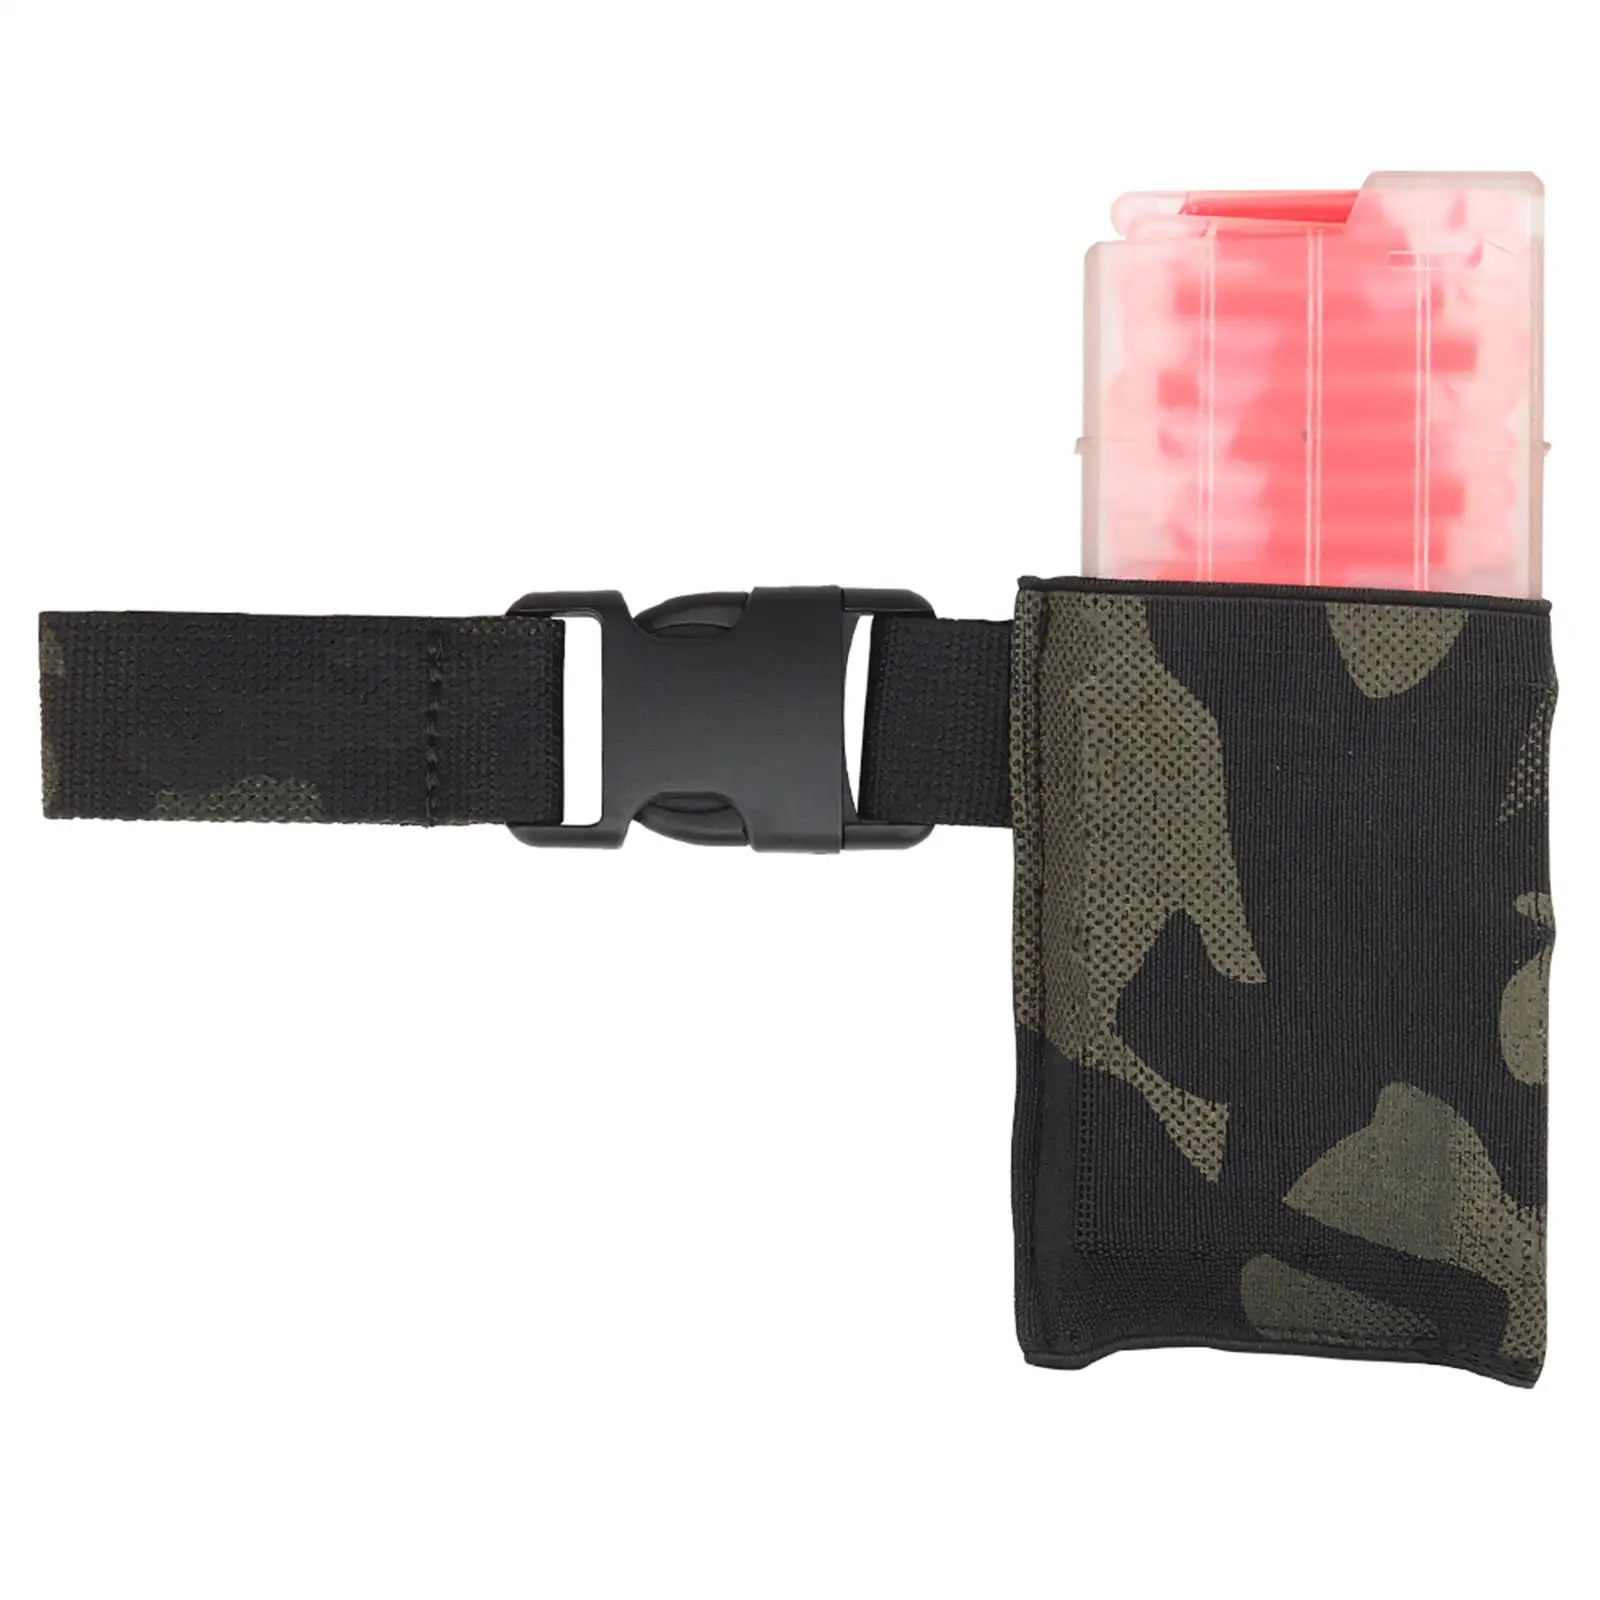  Marking Light Dispenser Belt Mounted Pouch Hanger Fluorescent Label  Signal Sticks  Accessories